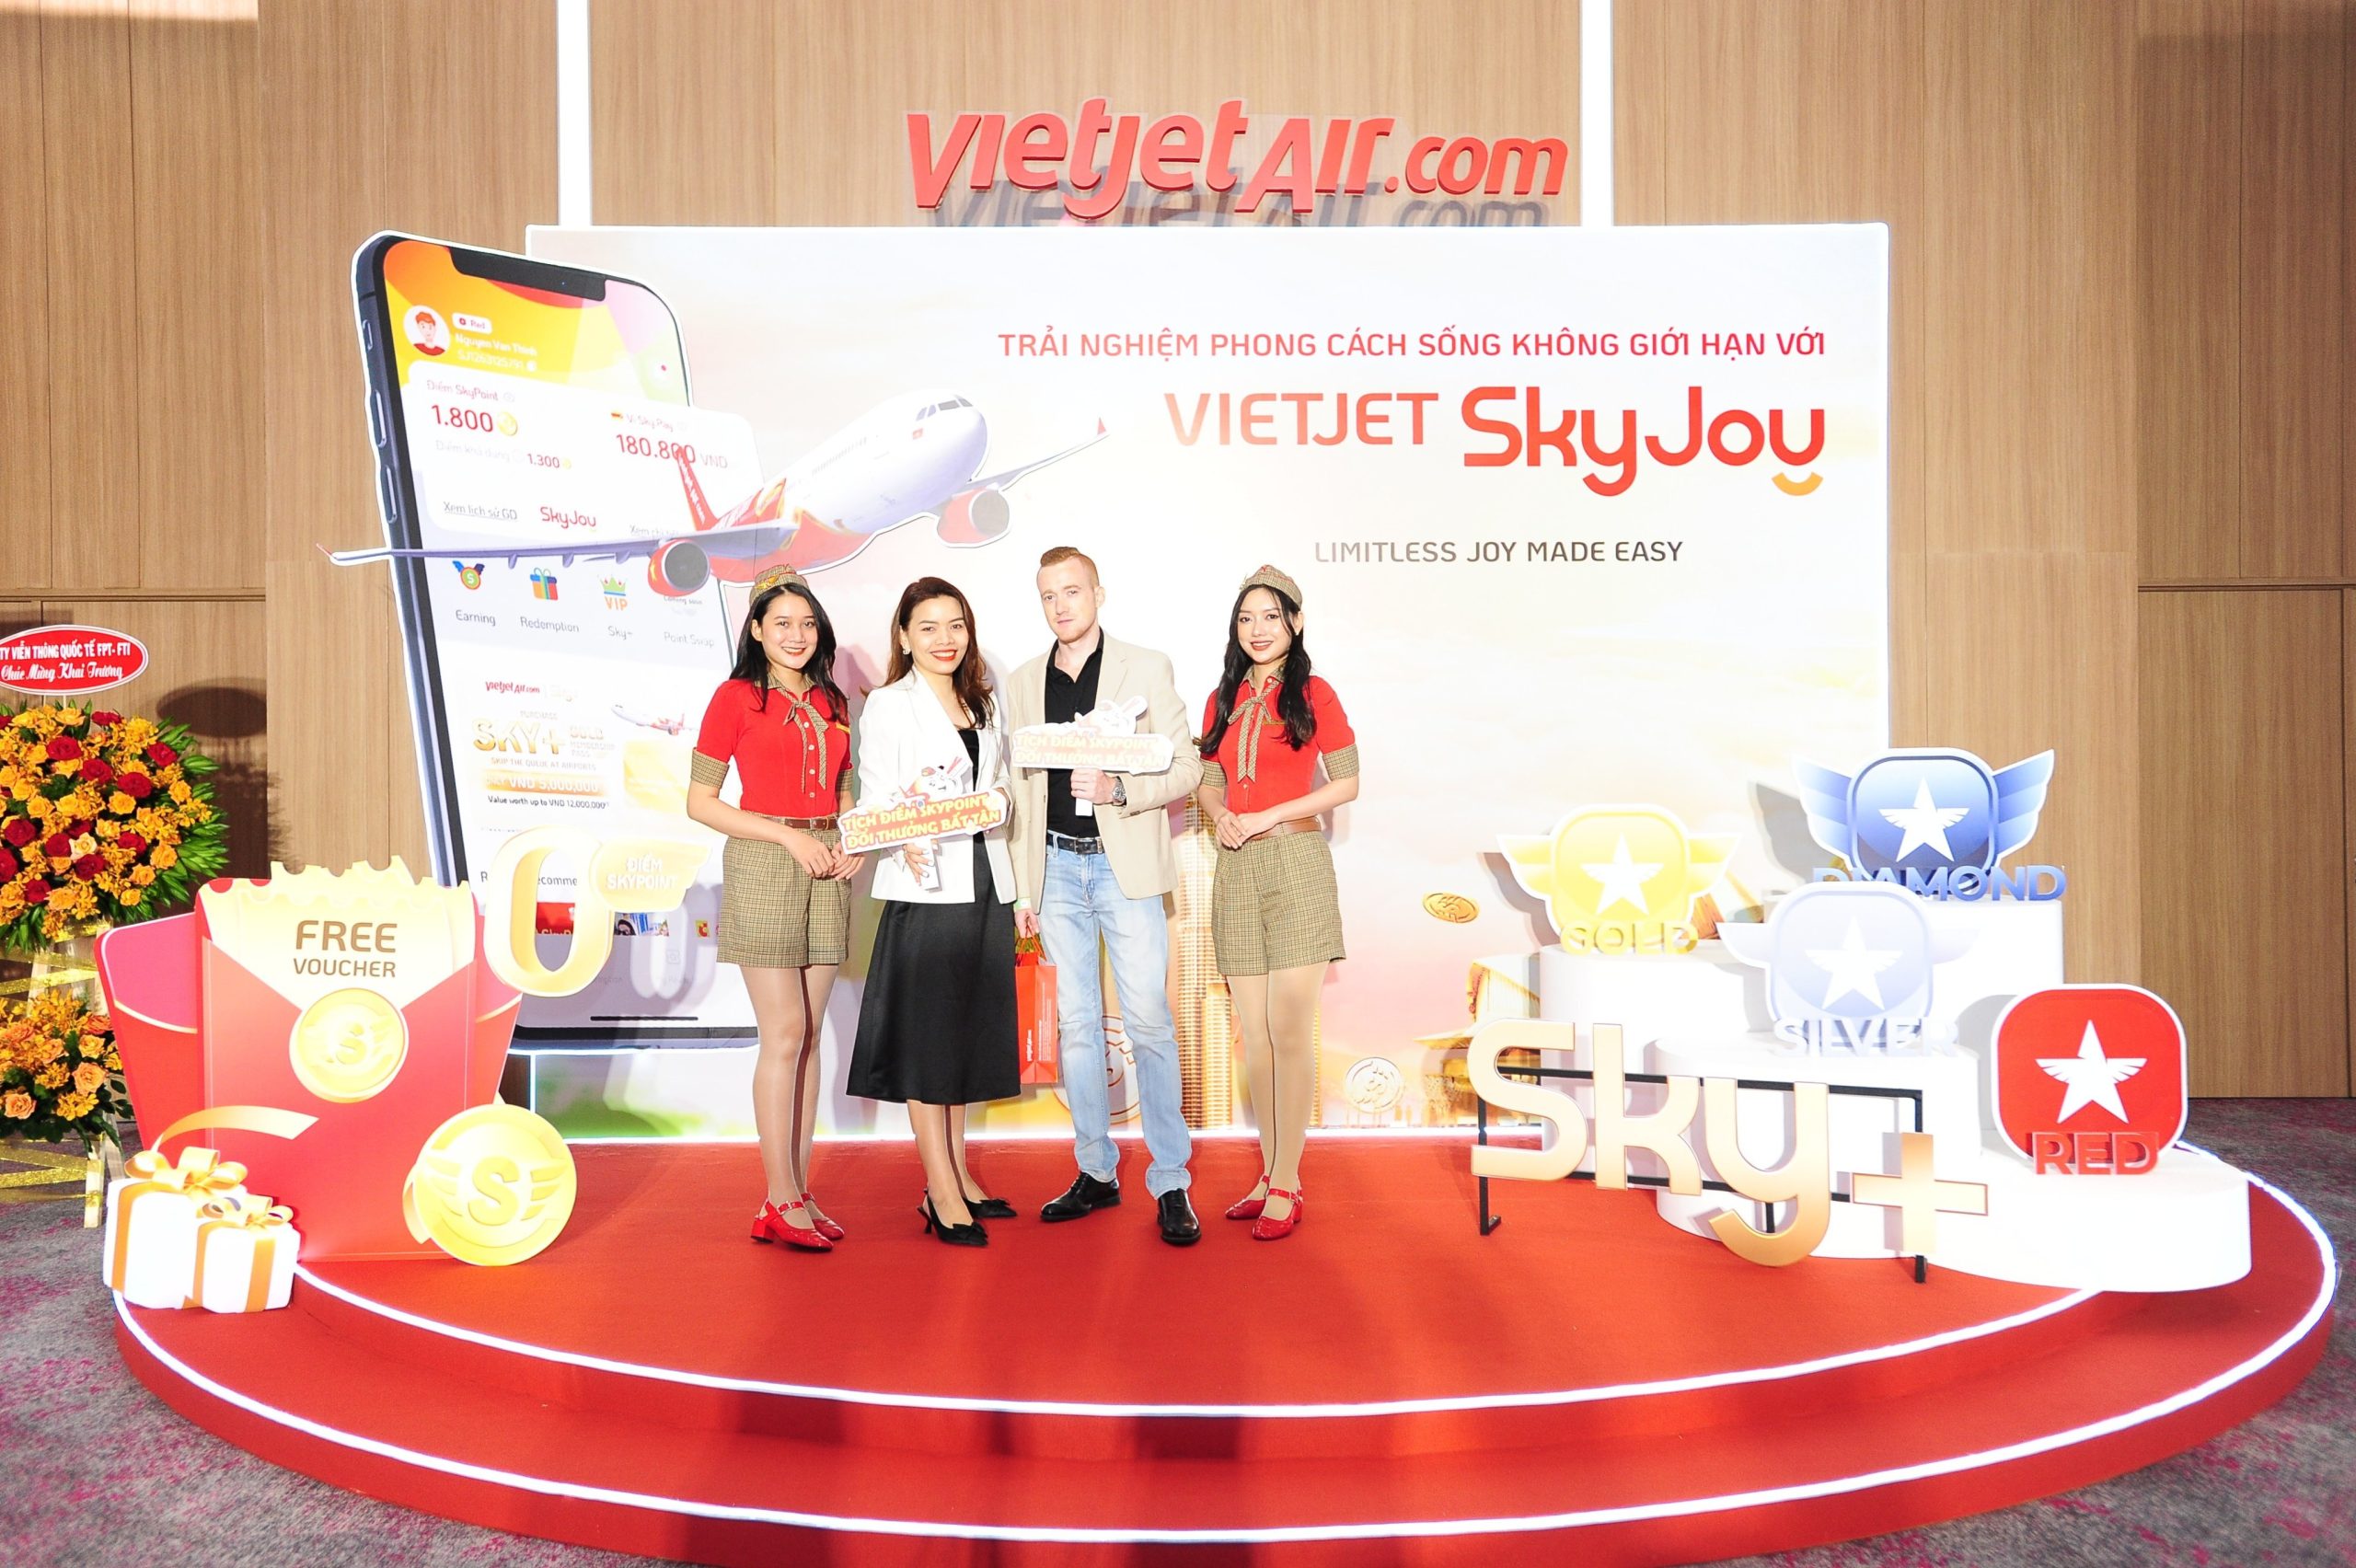 Tích Điểm Nhận Quà Cùng SkyJoy Do Vietjet Air Hợp Tác Cùng Maison Online